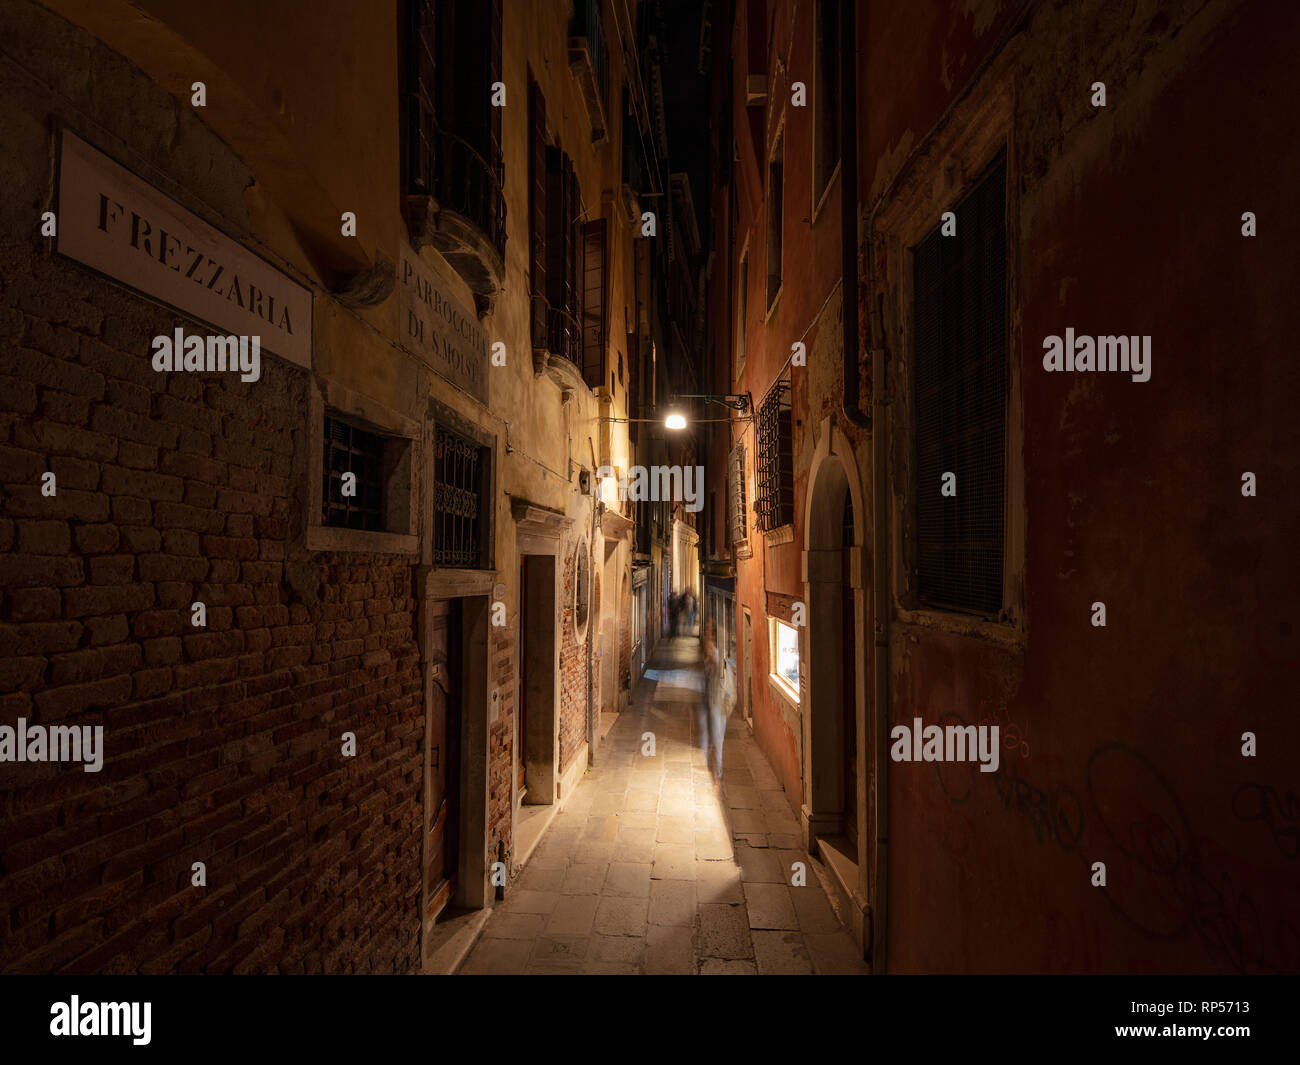 Uno di Venezia il grande po' vicoletto è una cosa fantastica per fotografare. Foto Stock